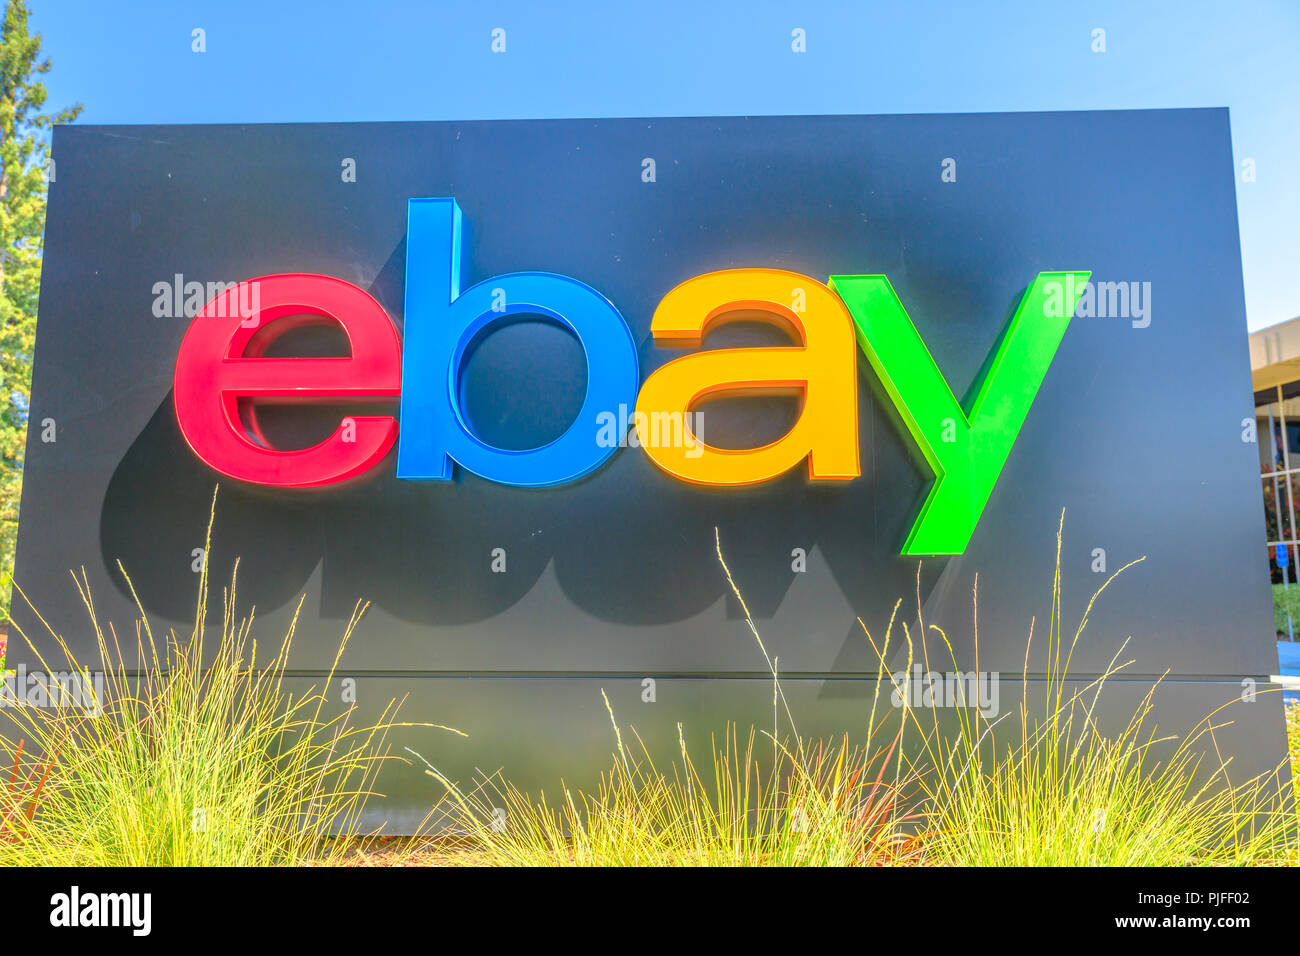 San Jose, Kalifornien, USA - 12. August 2018: Nahaufnahme von eBay an eBay's Hauptsitz in San Jose, Silicon Valley, Kalifornien. eBay Inc. ist ein multinationaler Konzern, ein Pionier im E-Commerce. Stockfoto